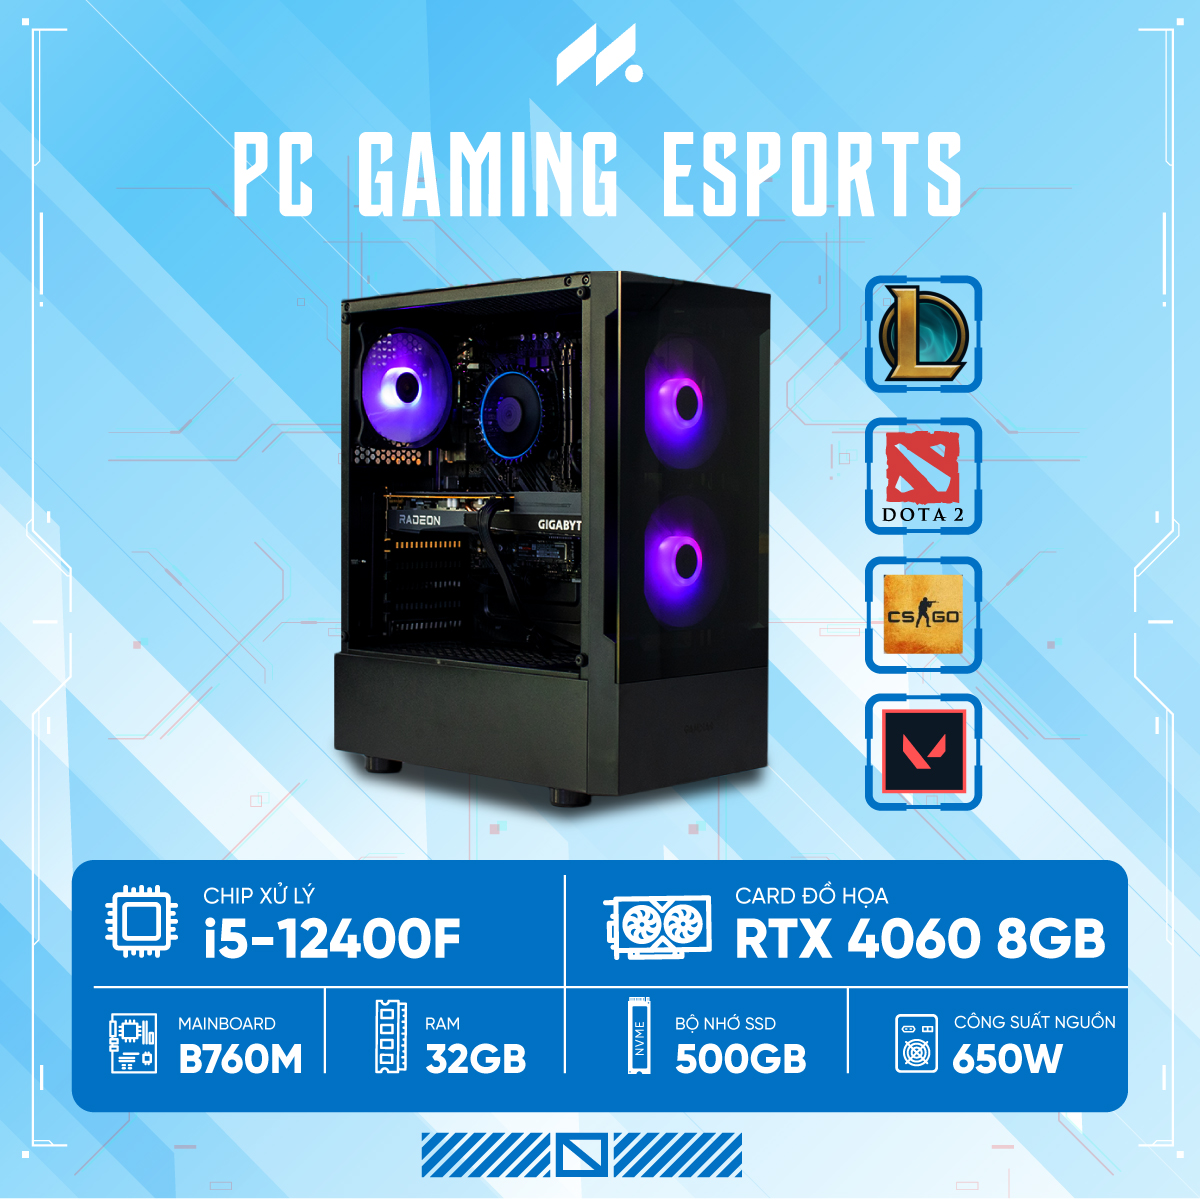 PC Gaming Esports i5-4060 (i5-12400F, RTX 4060 OC 8G, Ram 32GB, SSD 512GB, 650W)